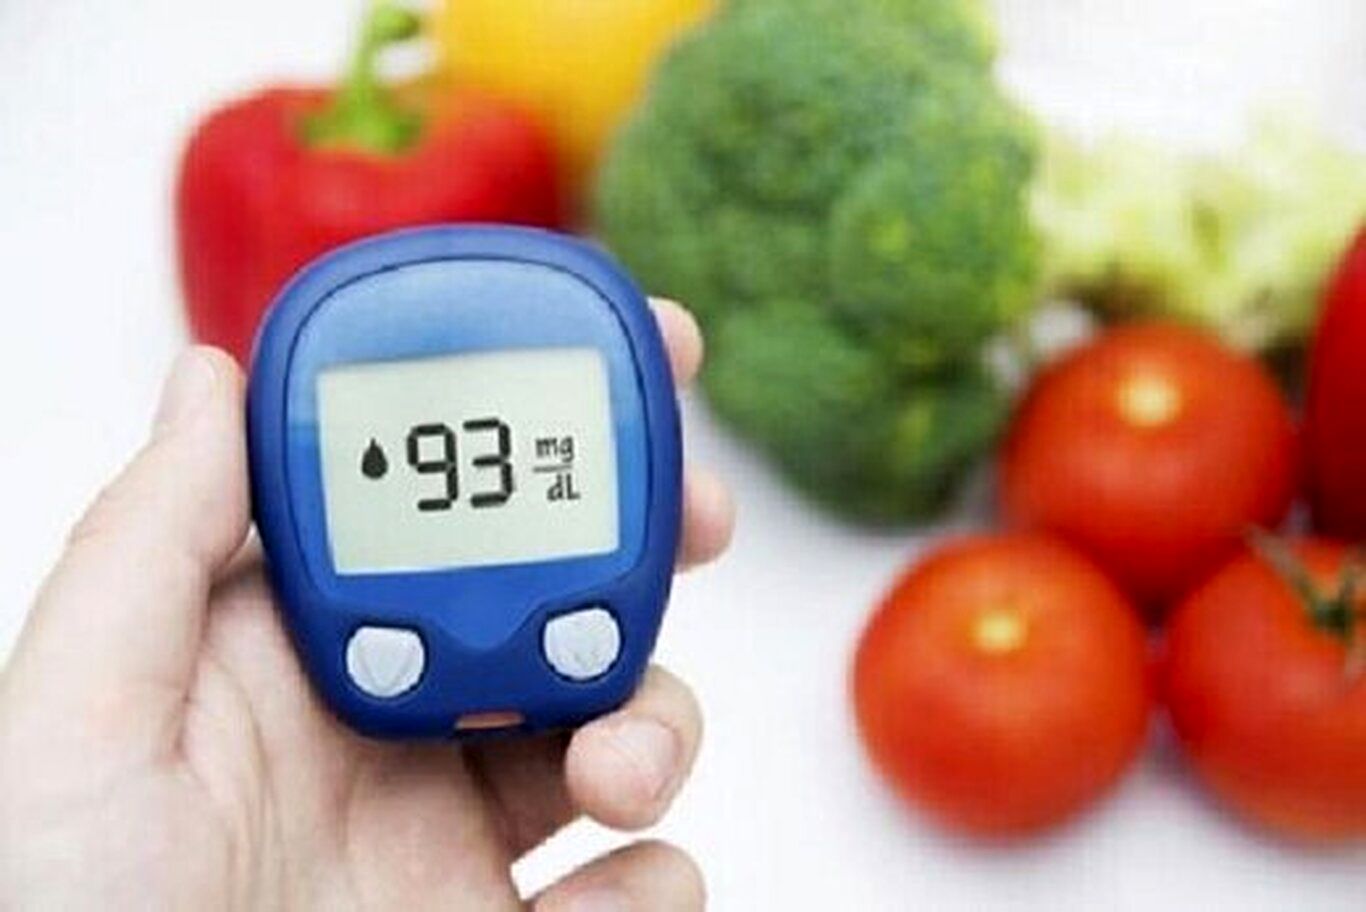 مبتلایان به دیابت این ۱۰ نکته غذایی را جدی بگیرند!